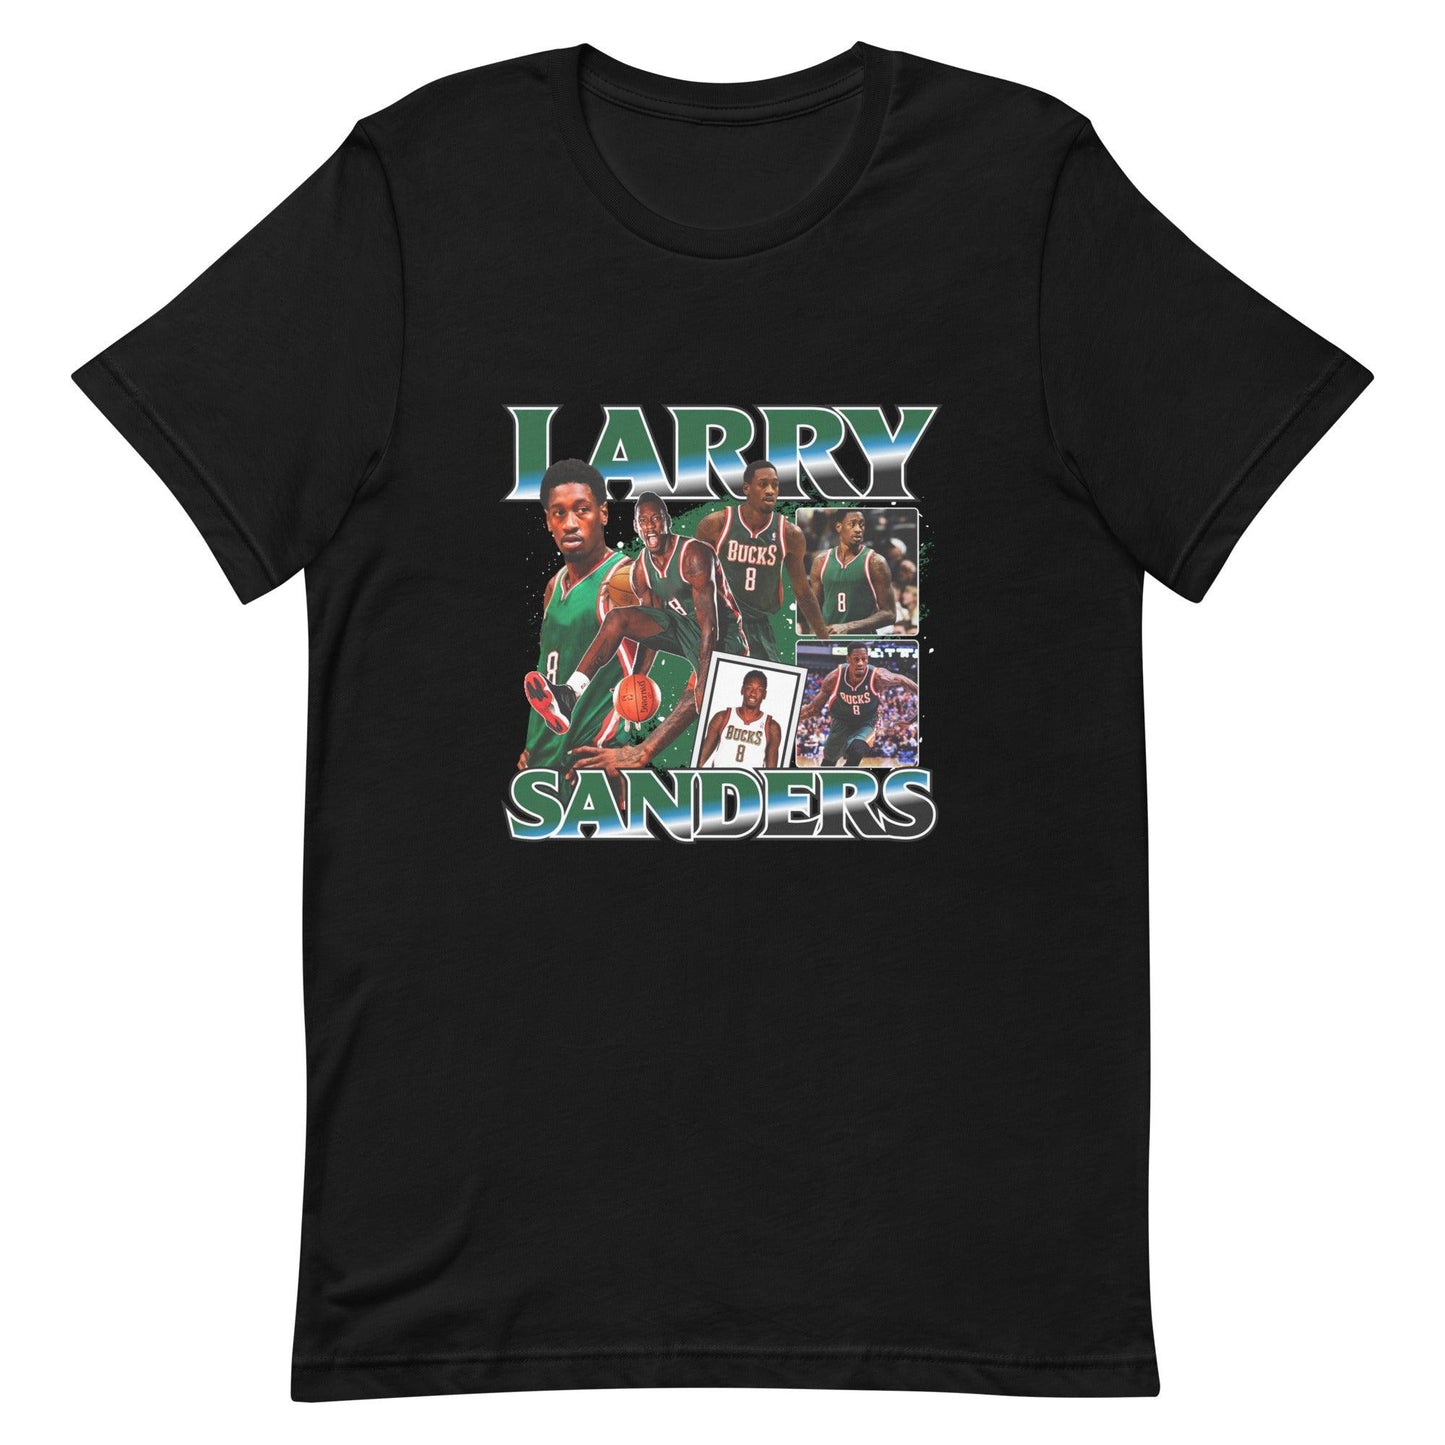 Larry Sanders "Vintage" t-shirt - Fan Arch